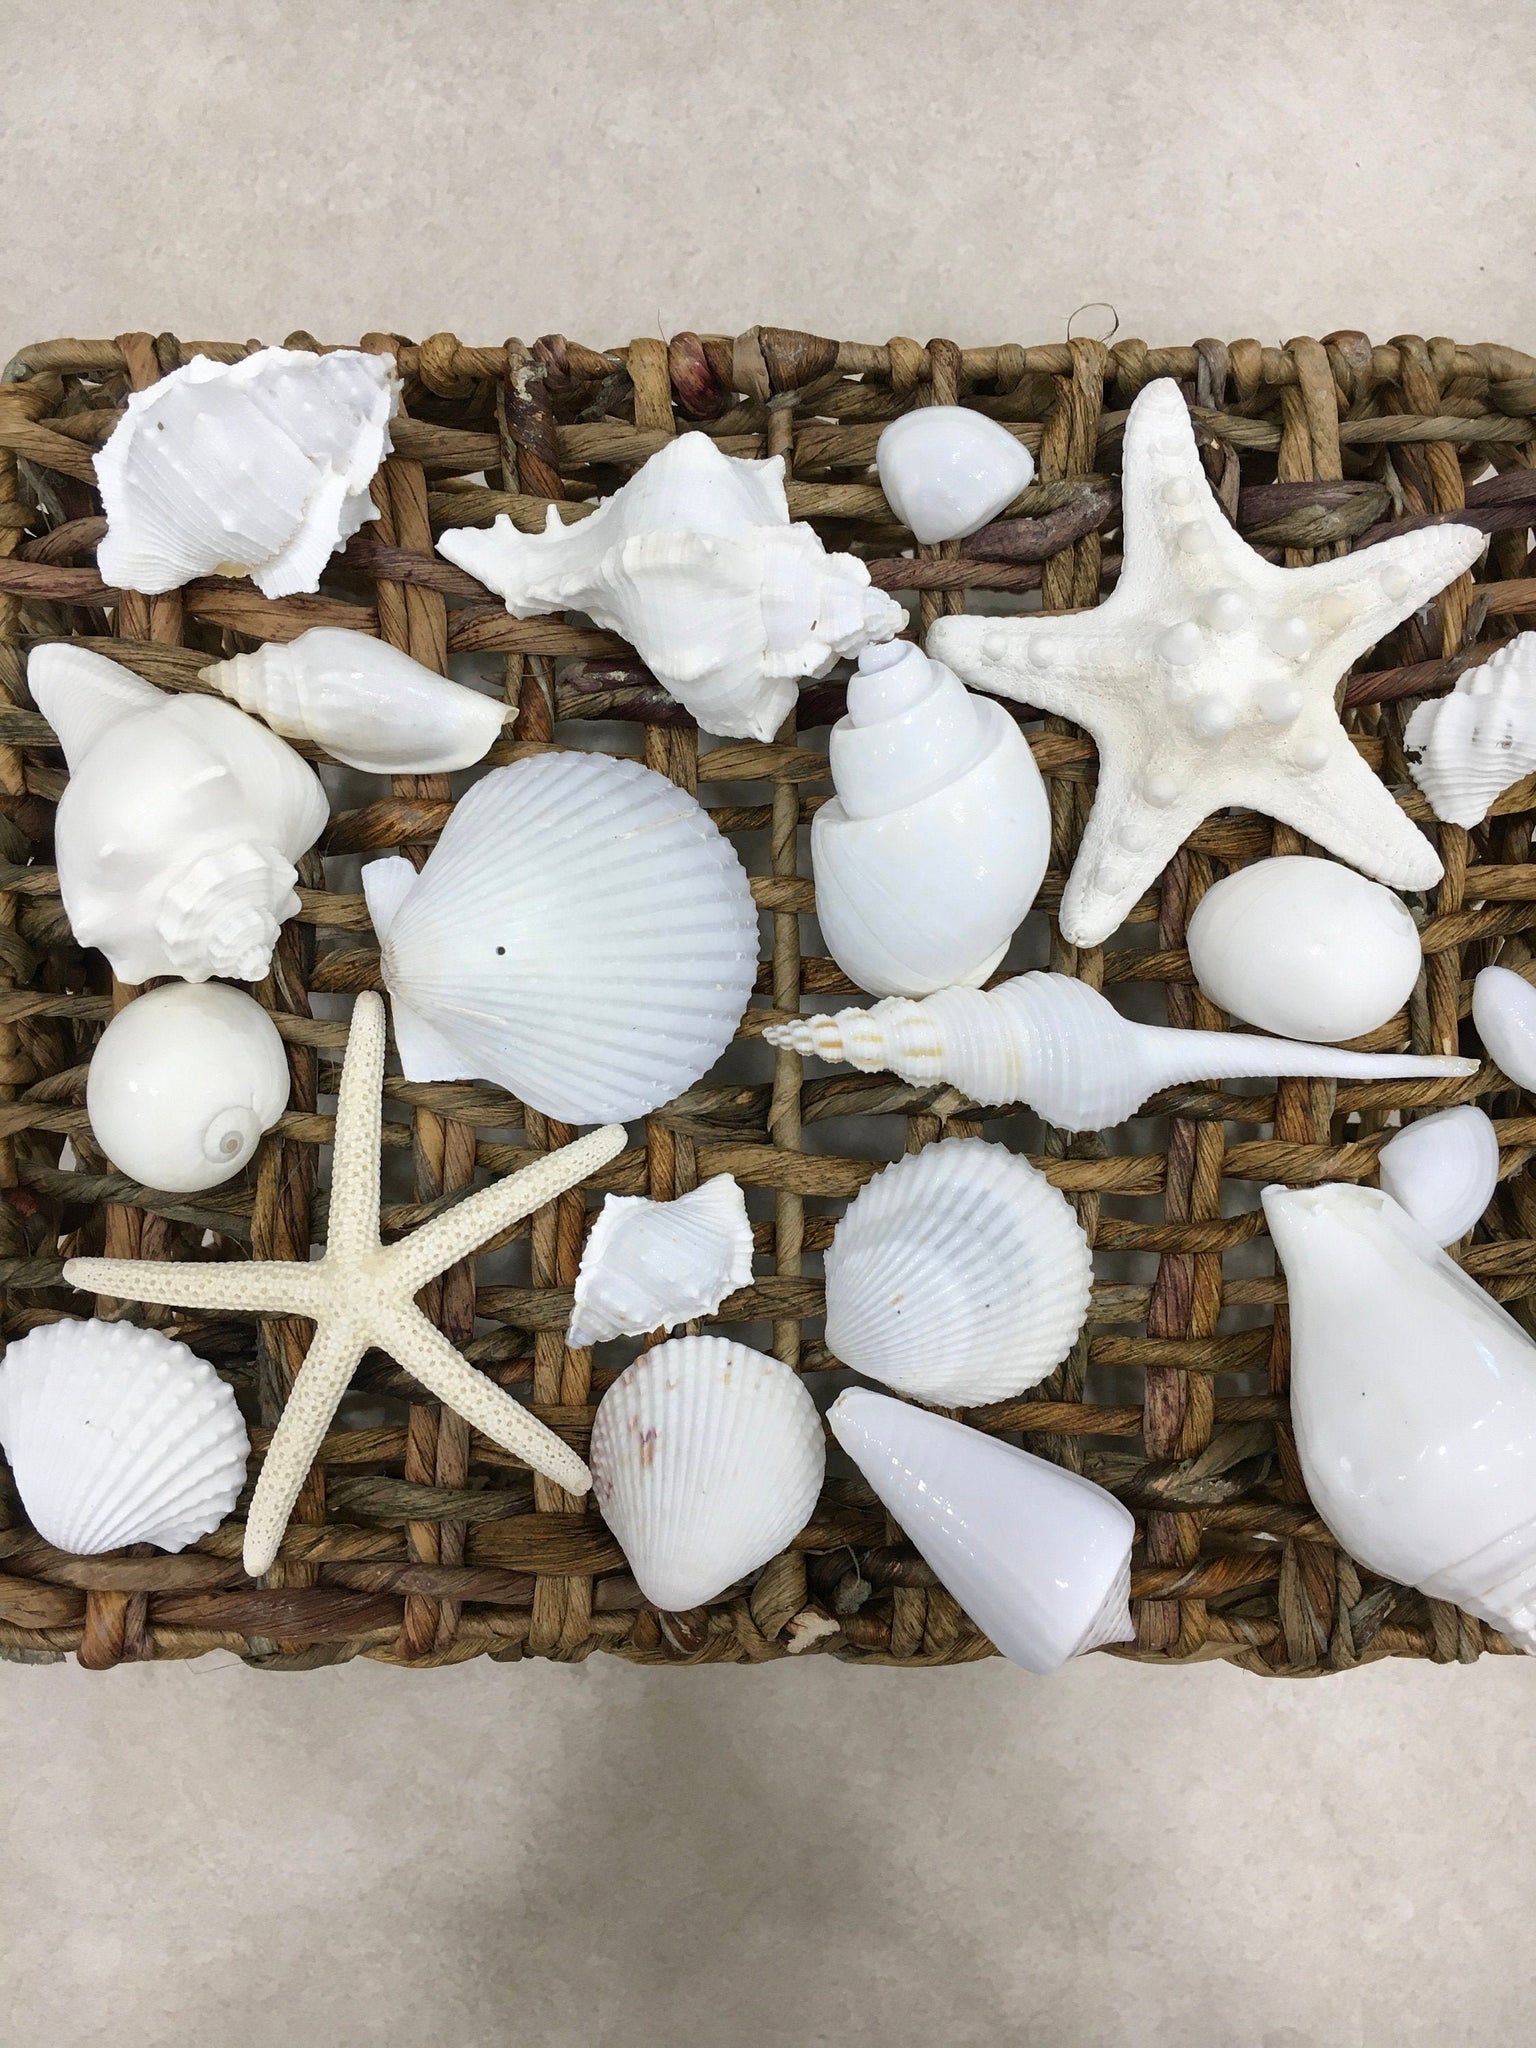 Small Seashell Mix, Tiny Sea Shell Lot, Beach Wedding Decor, Sea